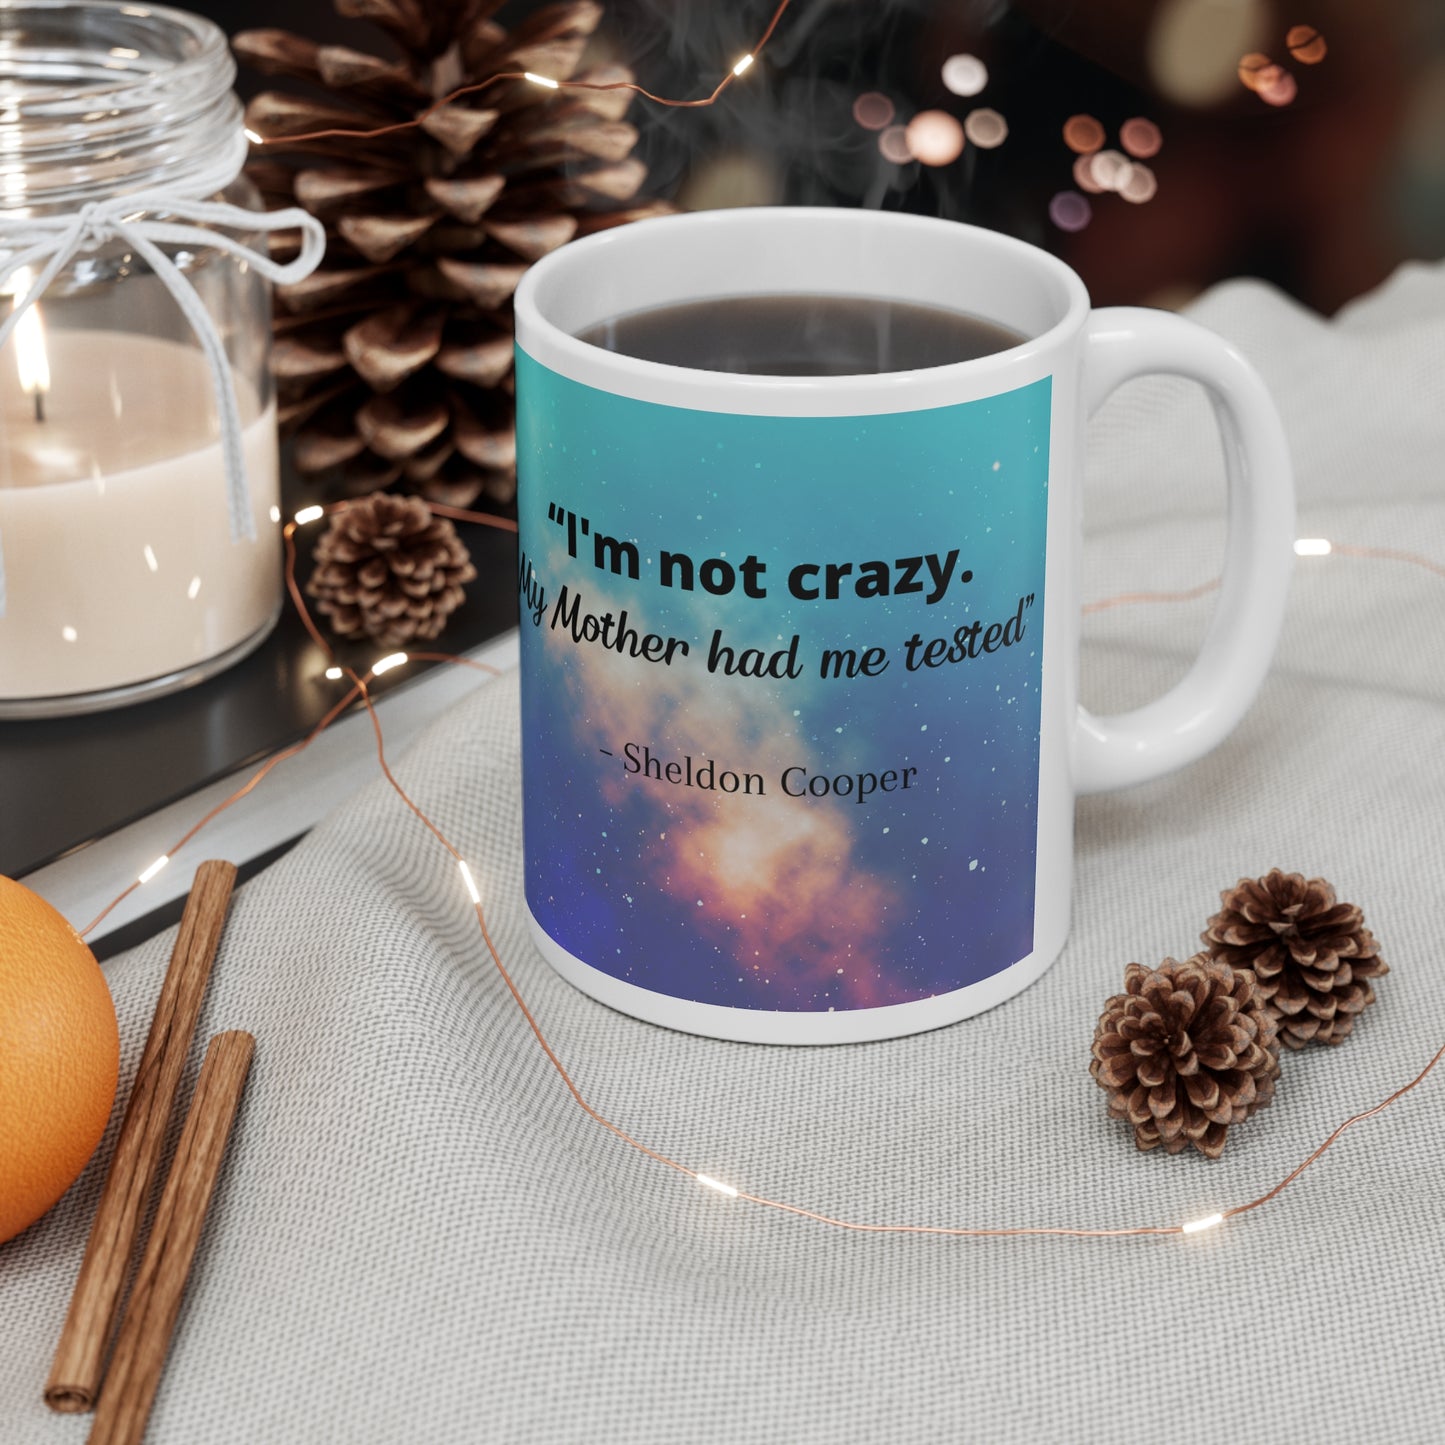 Big Bang theory mug, Sheldon Cooper "Crazy" quote coffee and tea mug, Big bang theory fan birthday gift